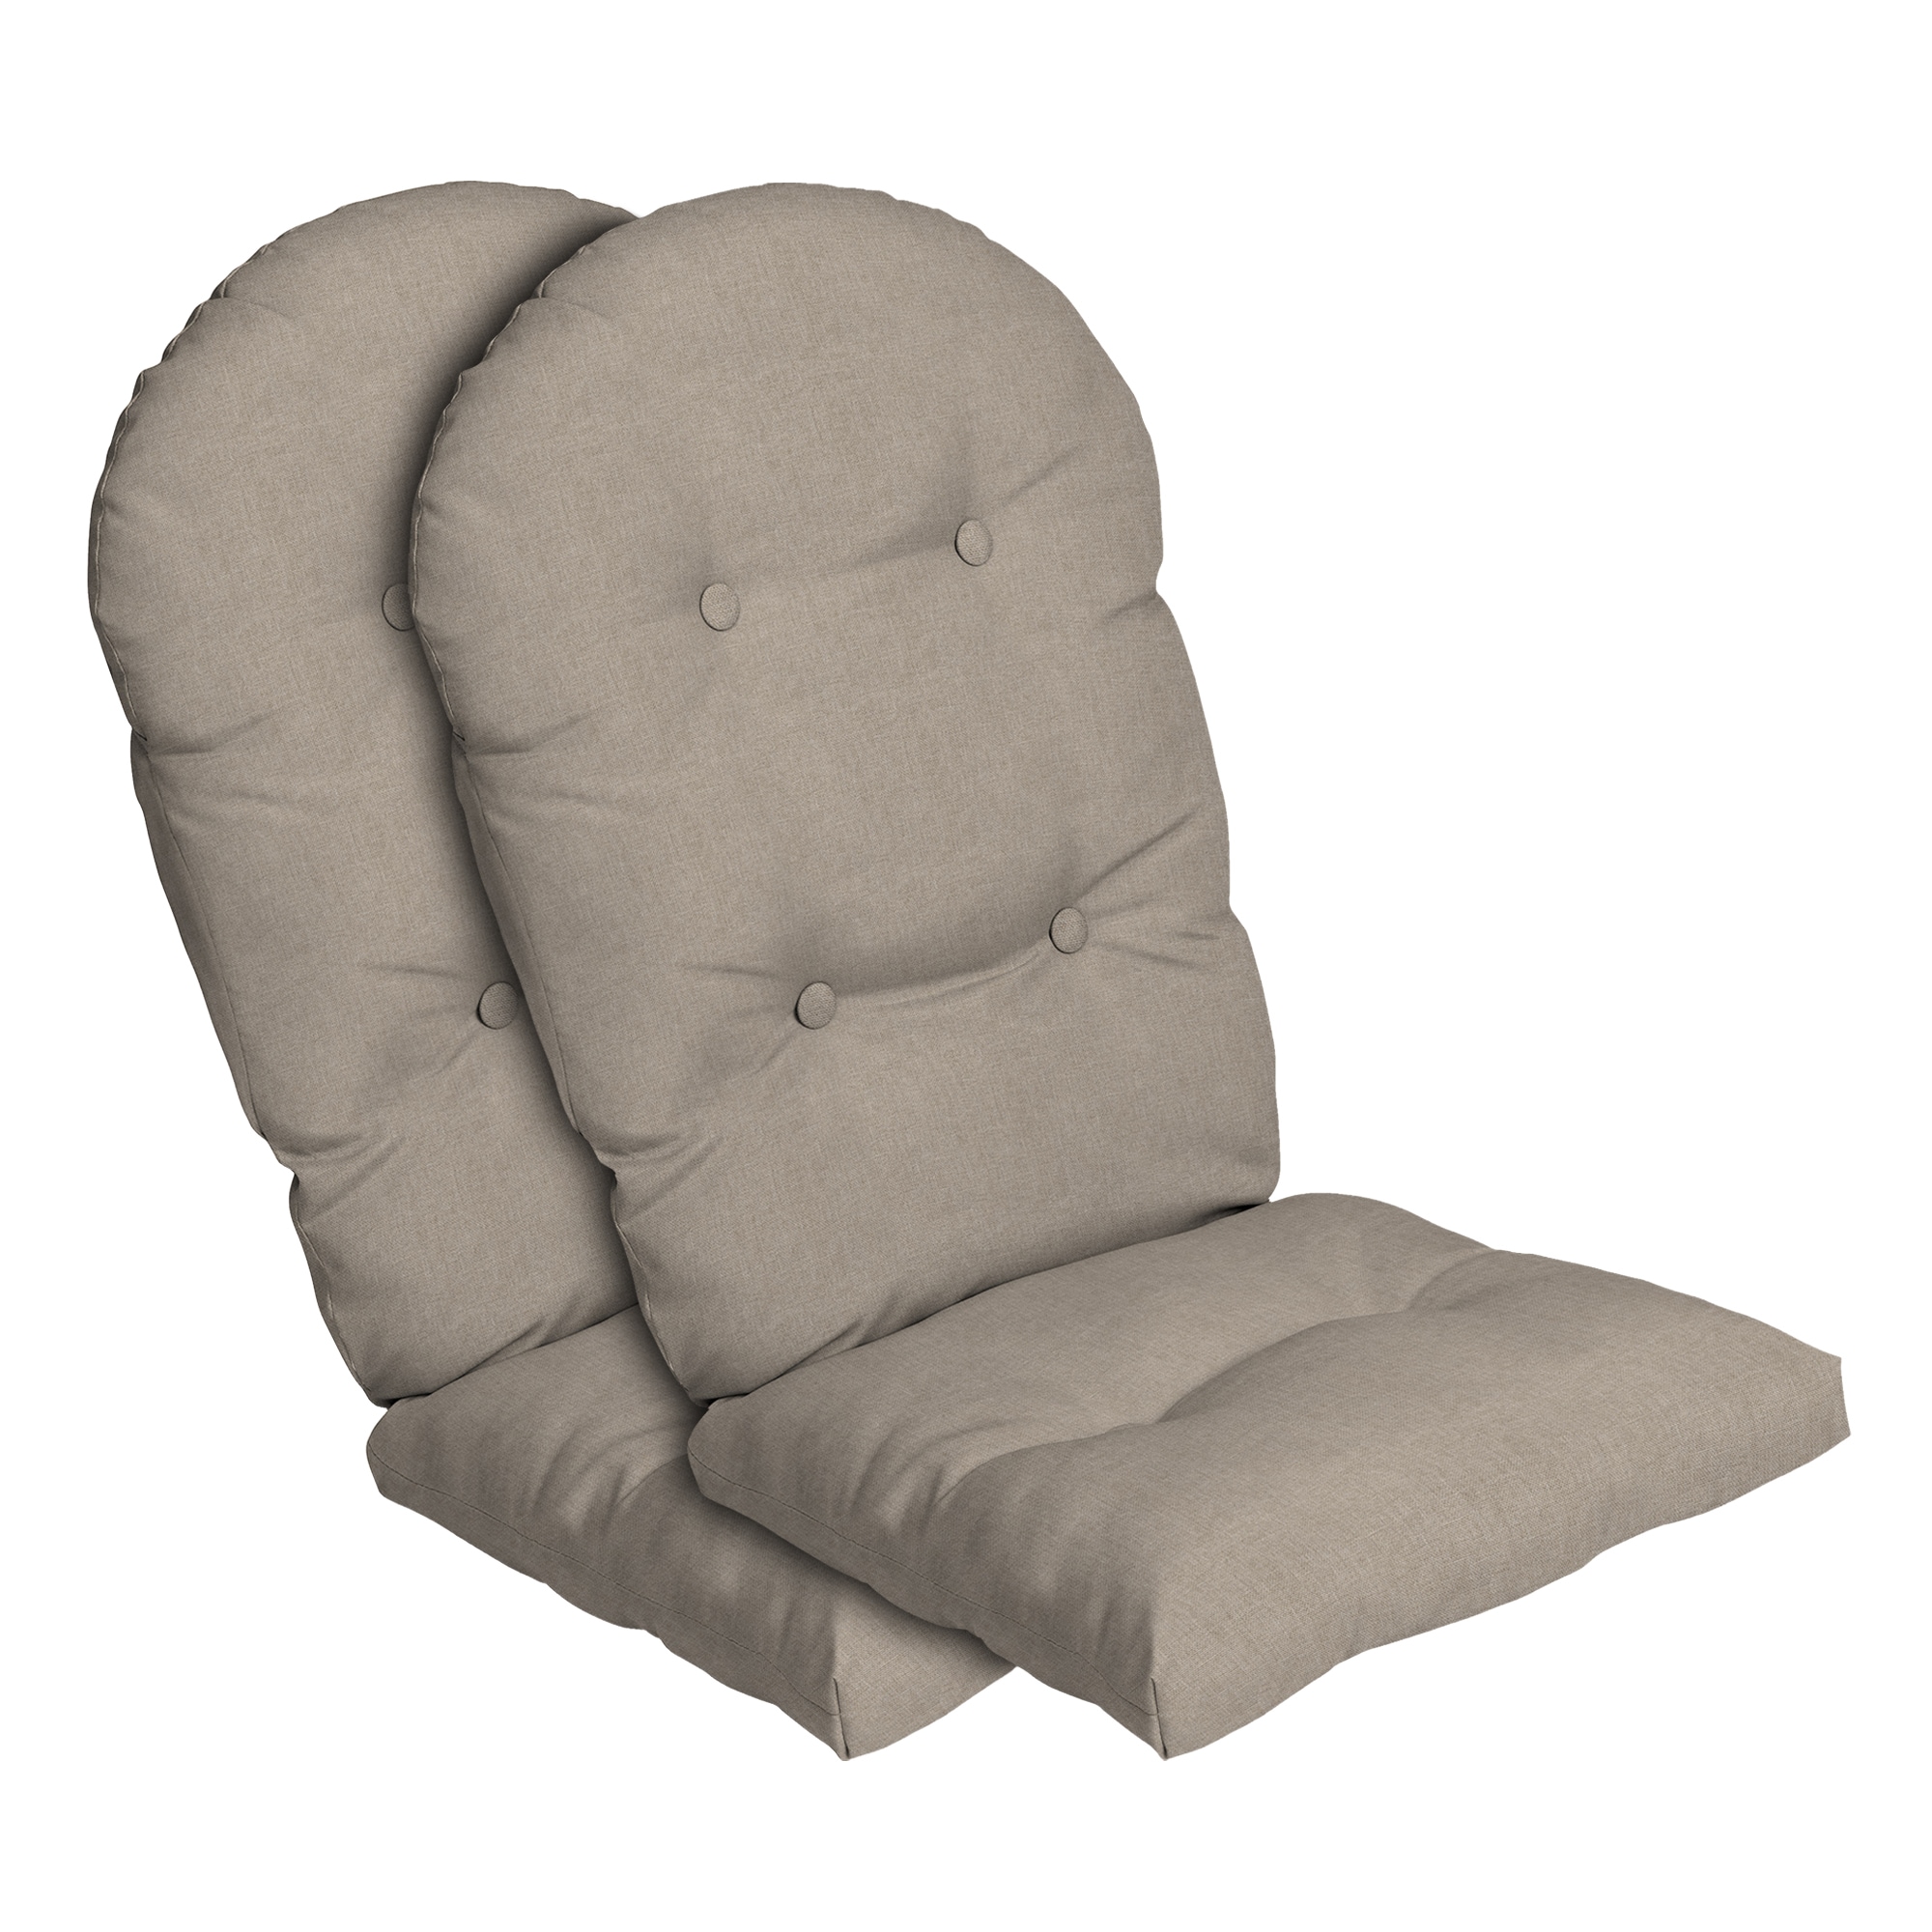 All Things Cedar CC21-B Adirondack Chair Cushion Blue